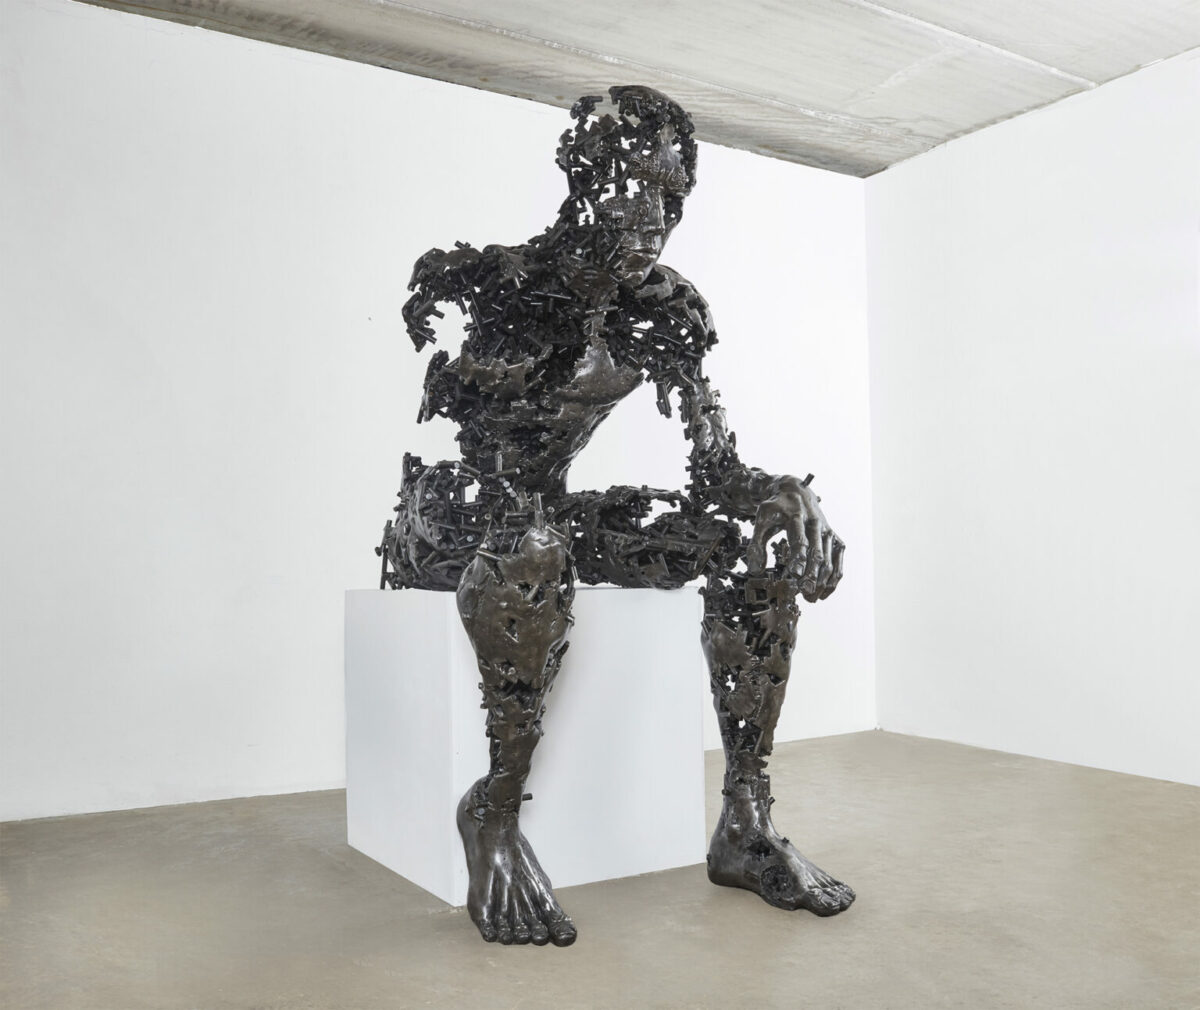 Fragmented Figures Awesome Steel Sculptures By Regardt Van Der Meulen (9)